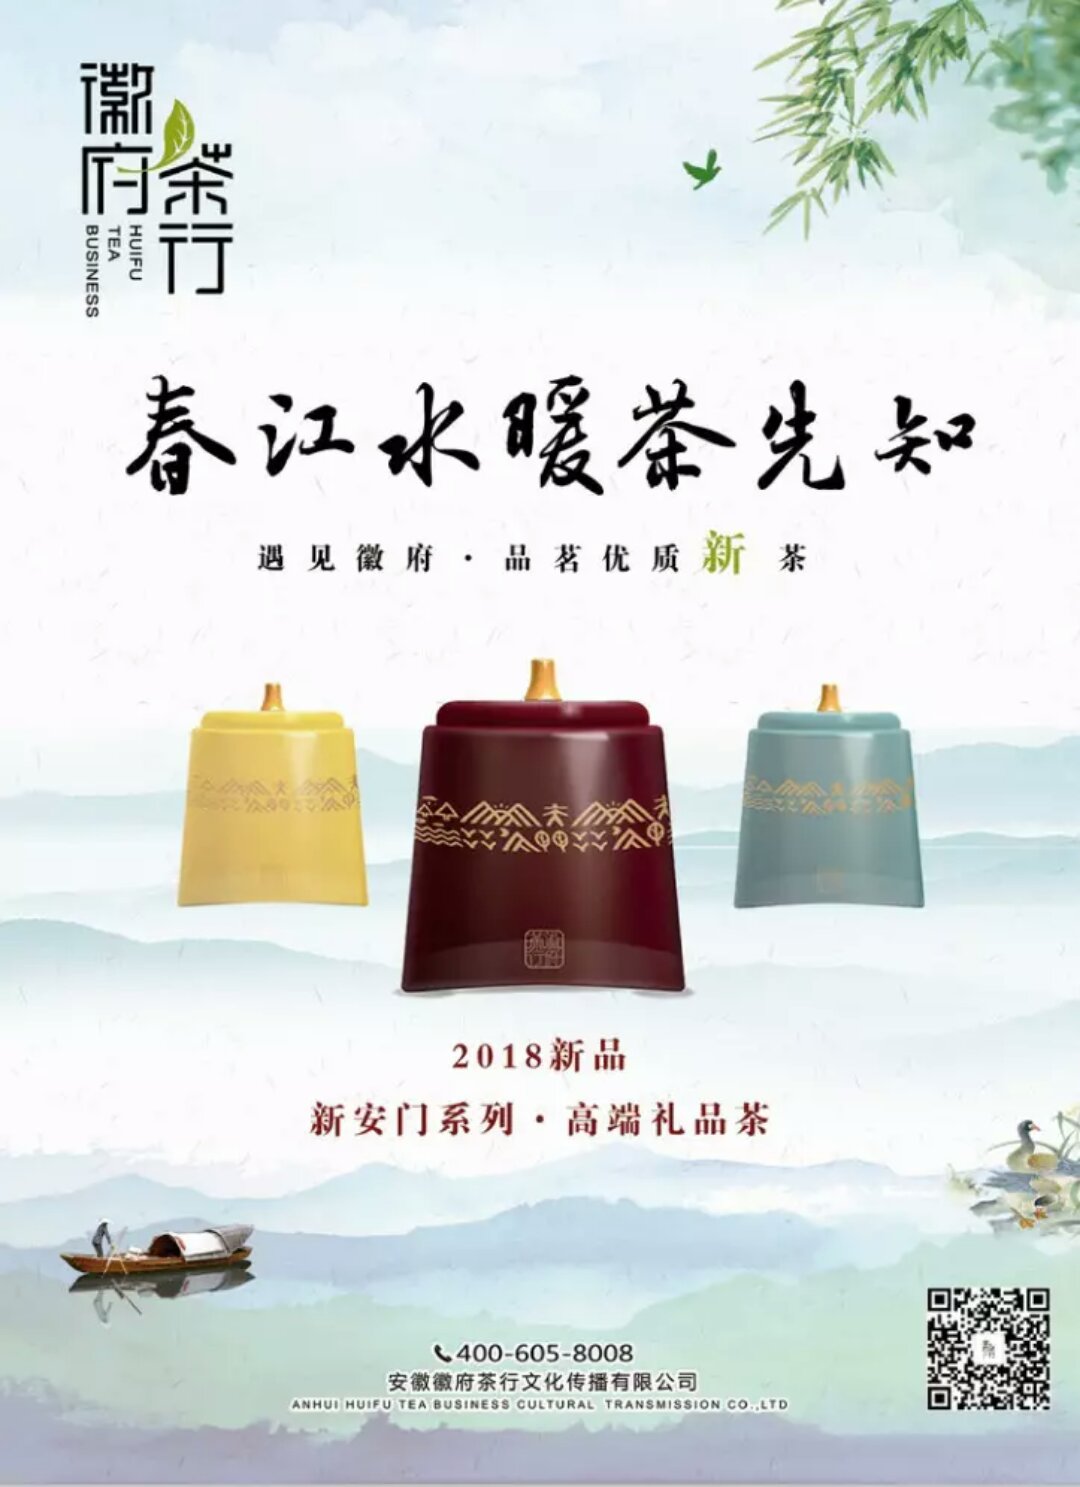 祝贺朱海涛副秘书长单位徽府茶行产品荣获世界绿茶评比金奖